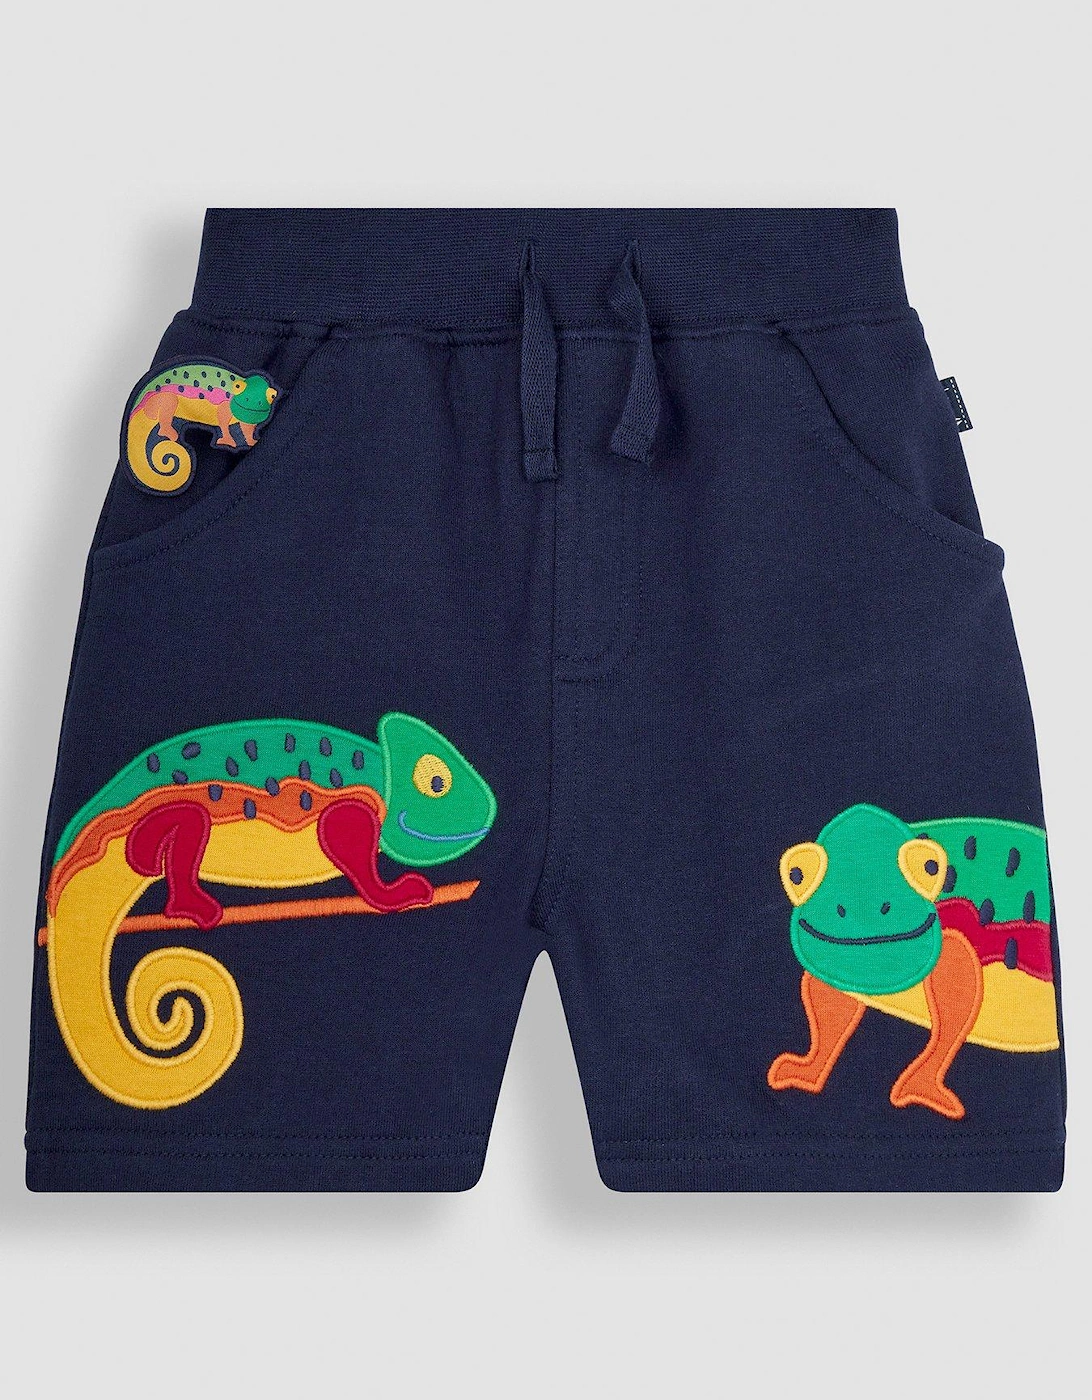 Boys Chameleon Applique Pet In Pocket Shorts, 4 of 3